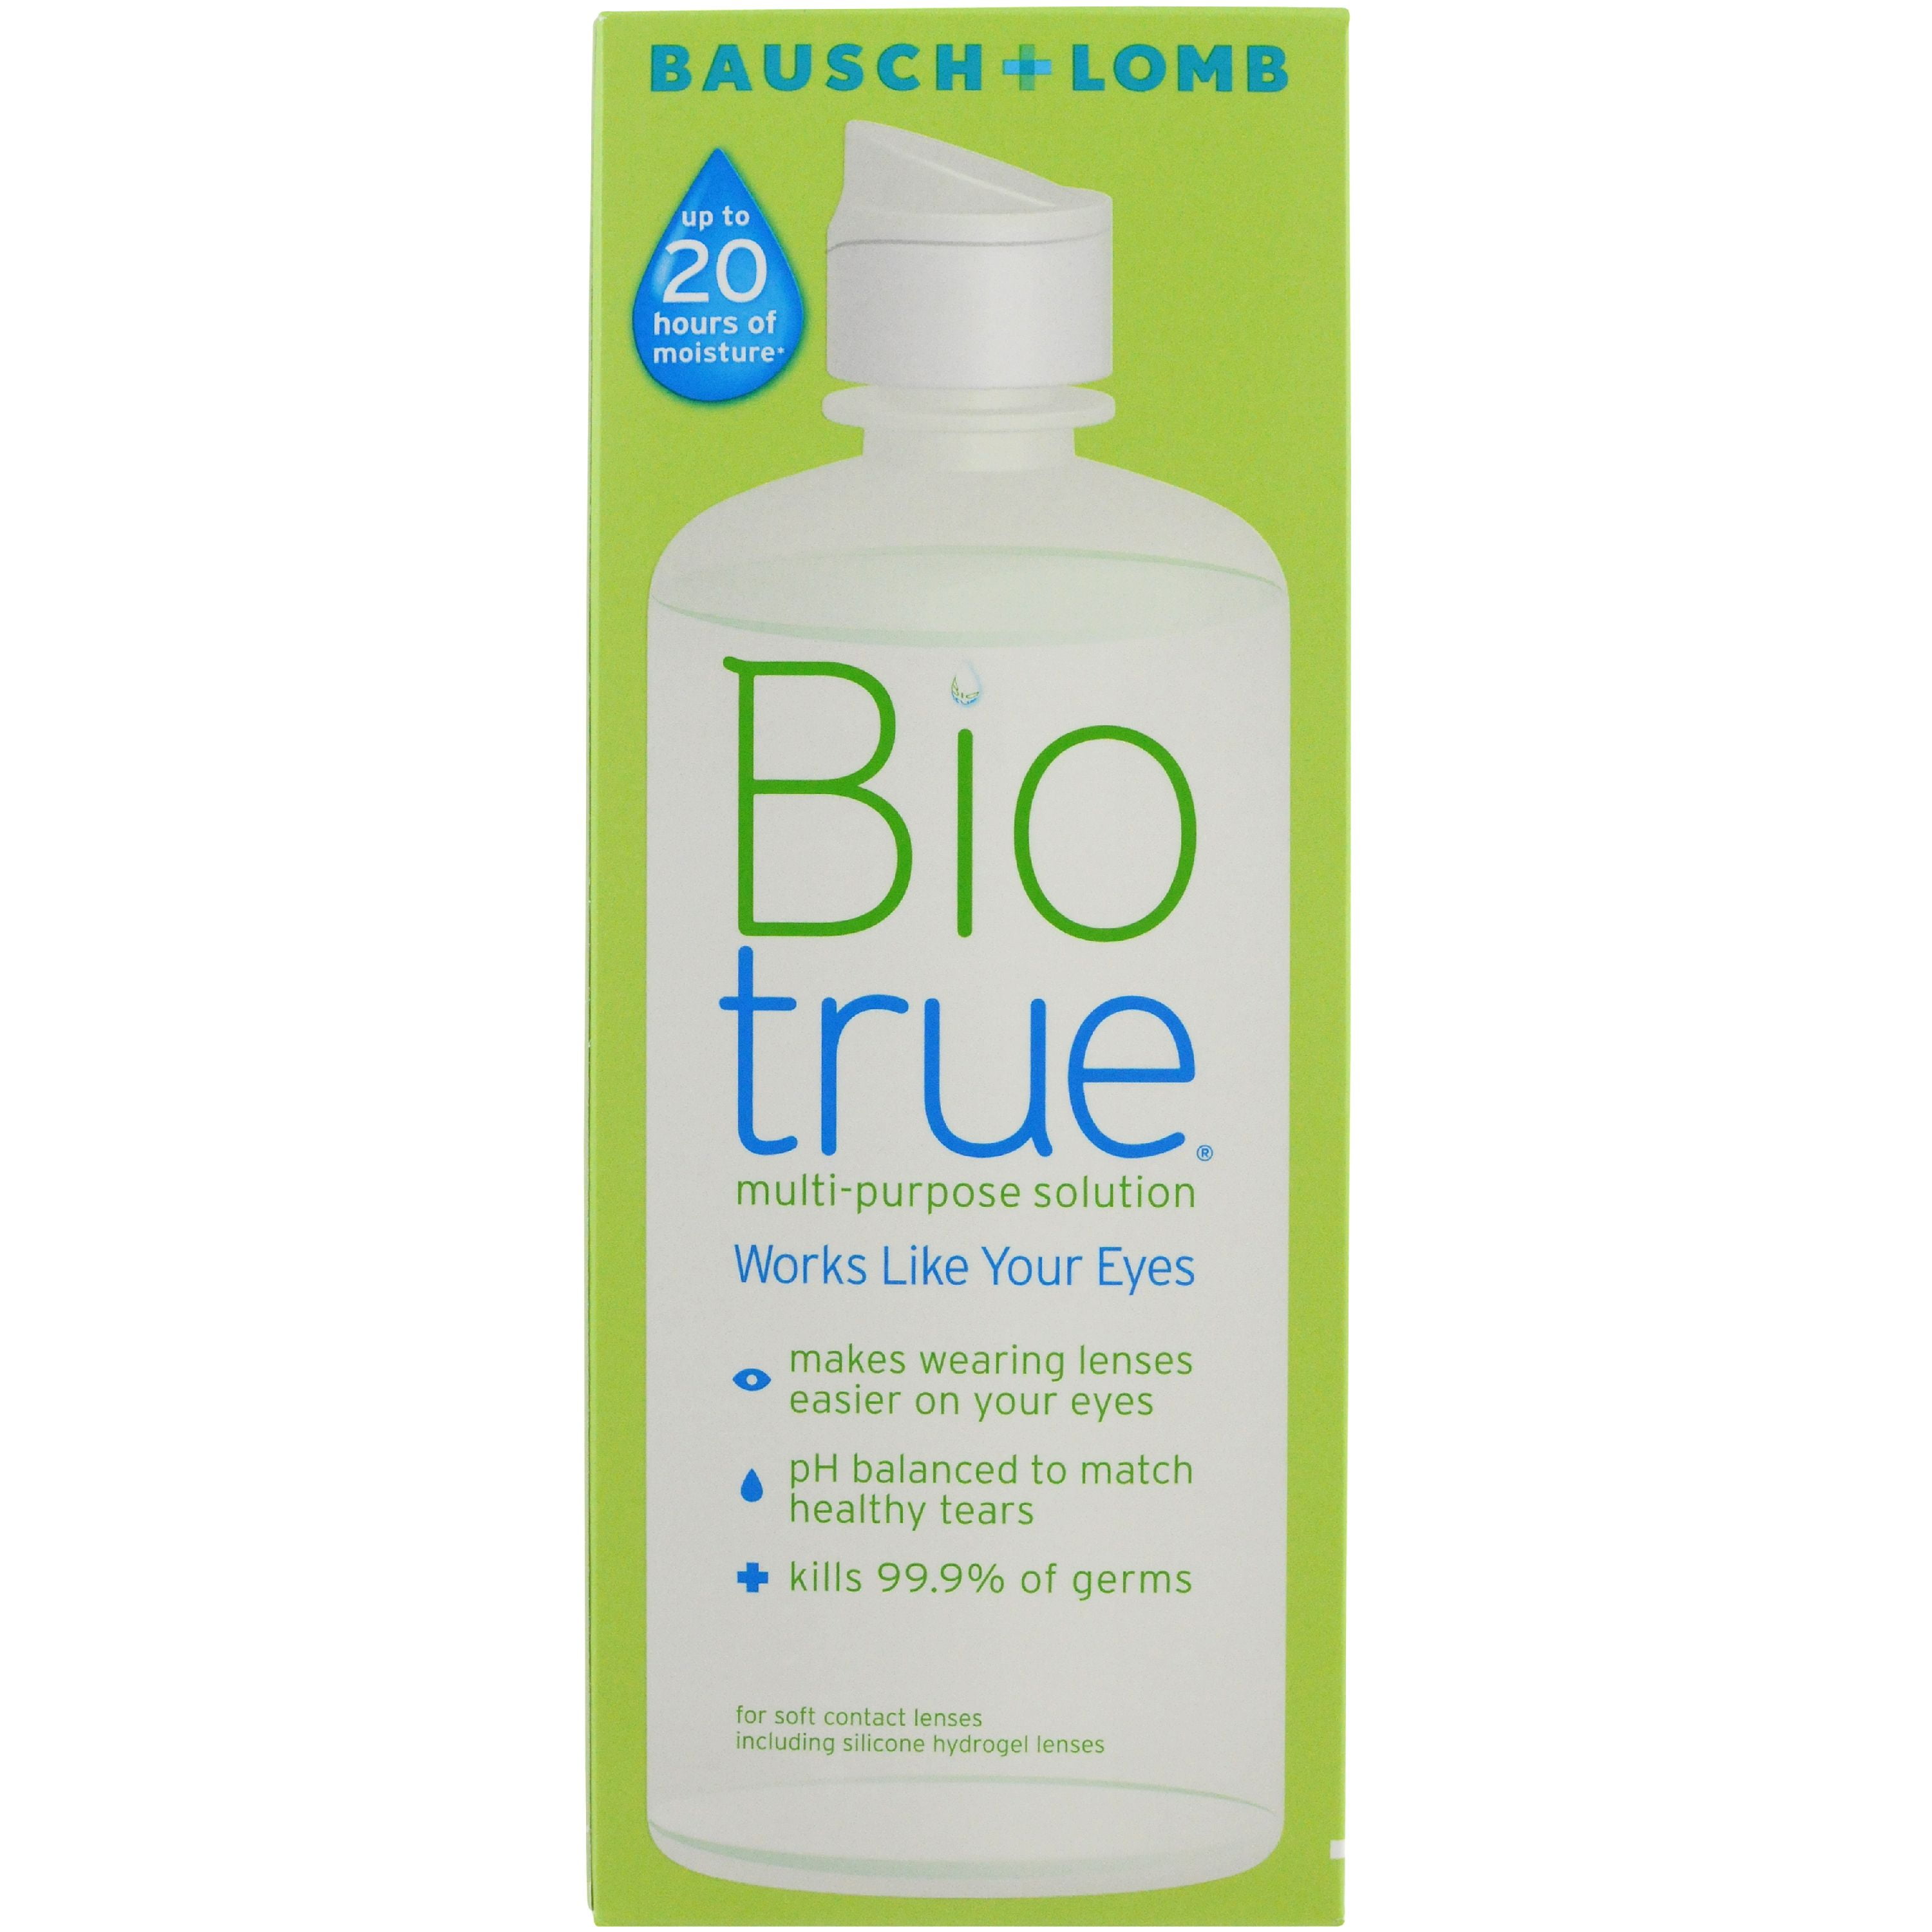 Bausch & Lomb Biotrue for Soft Contact Lenses Multi-Purpose Solution, 10 oz - Walmart.com - Walmart.com